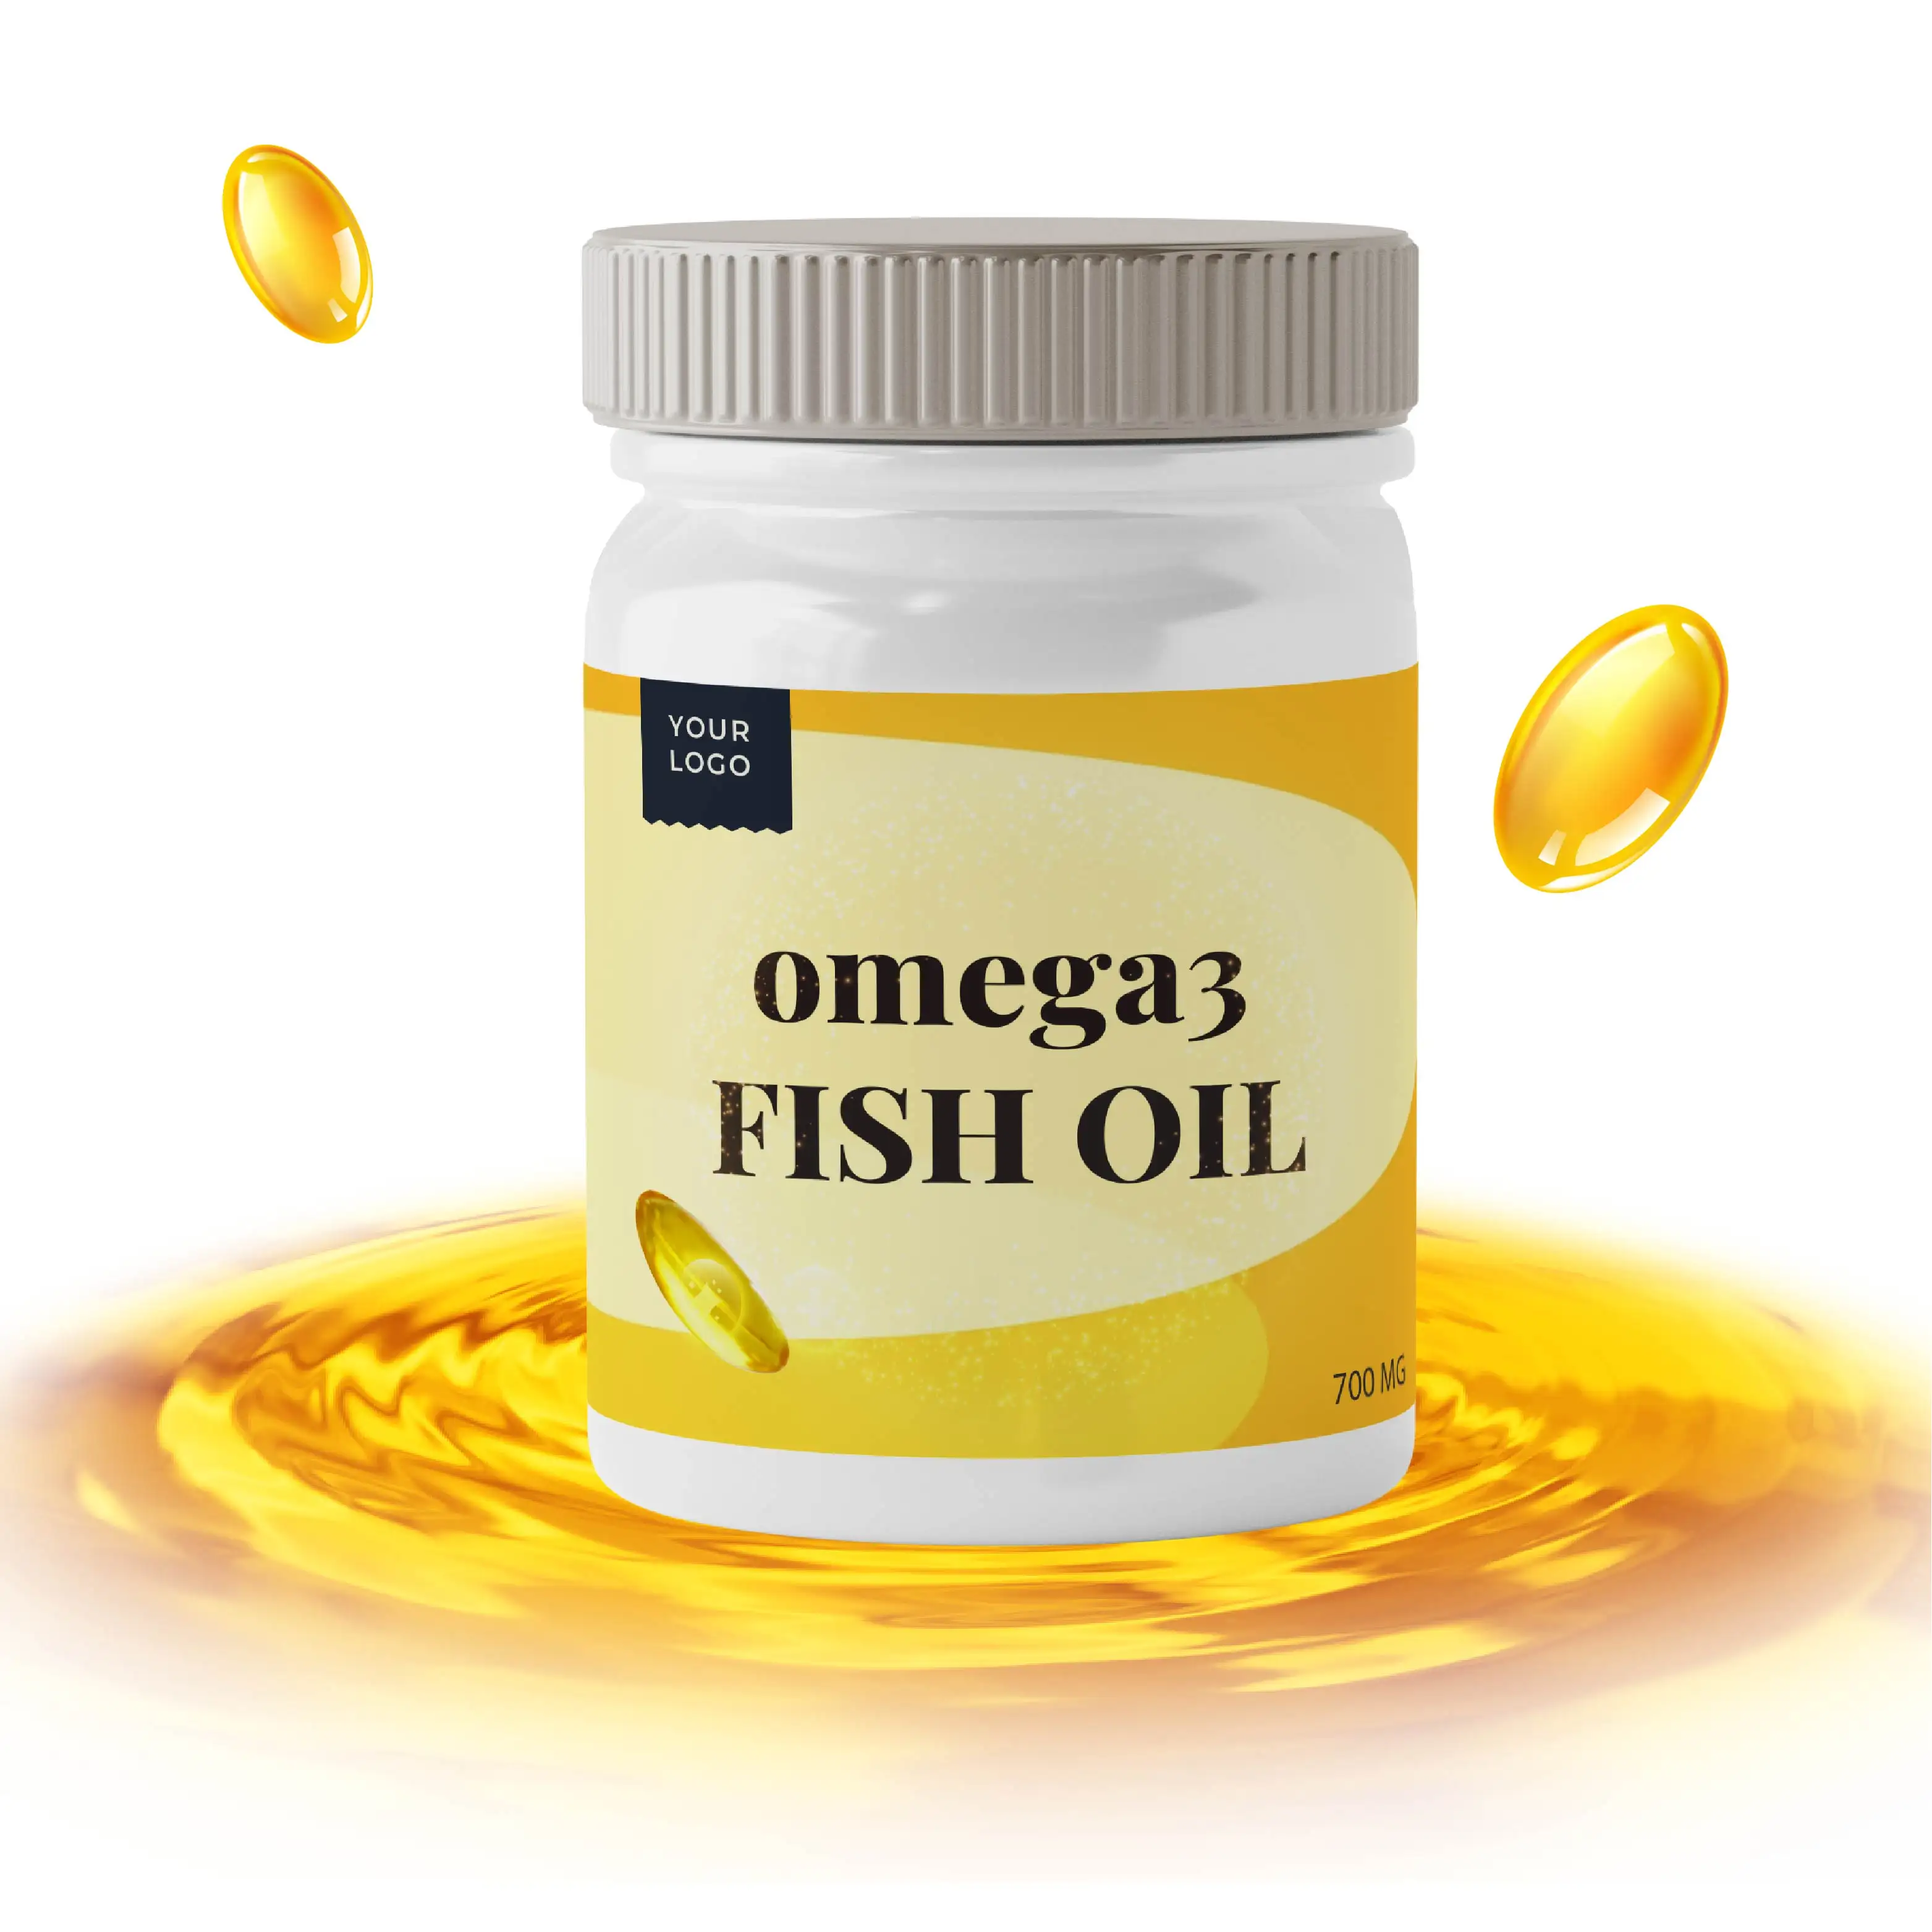 Vahşi yakalanan balık yağı takviyesi, EPA DHA dahil olmak üzere Omega 3 balık yağı kapsülleri ve Omega-3 yağ asitleri kaynaklı